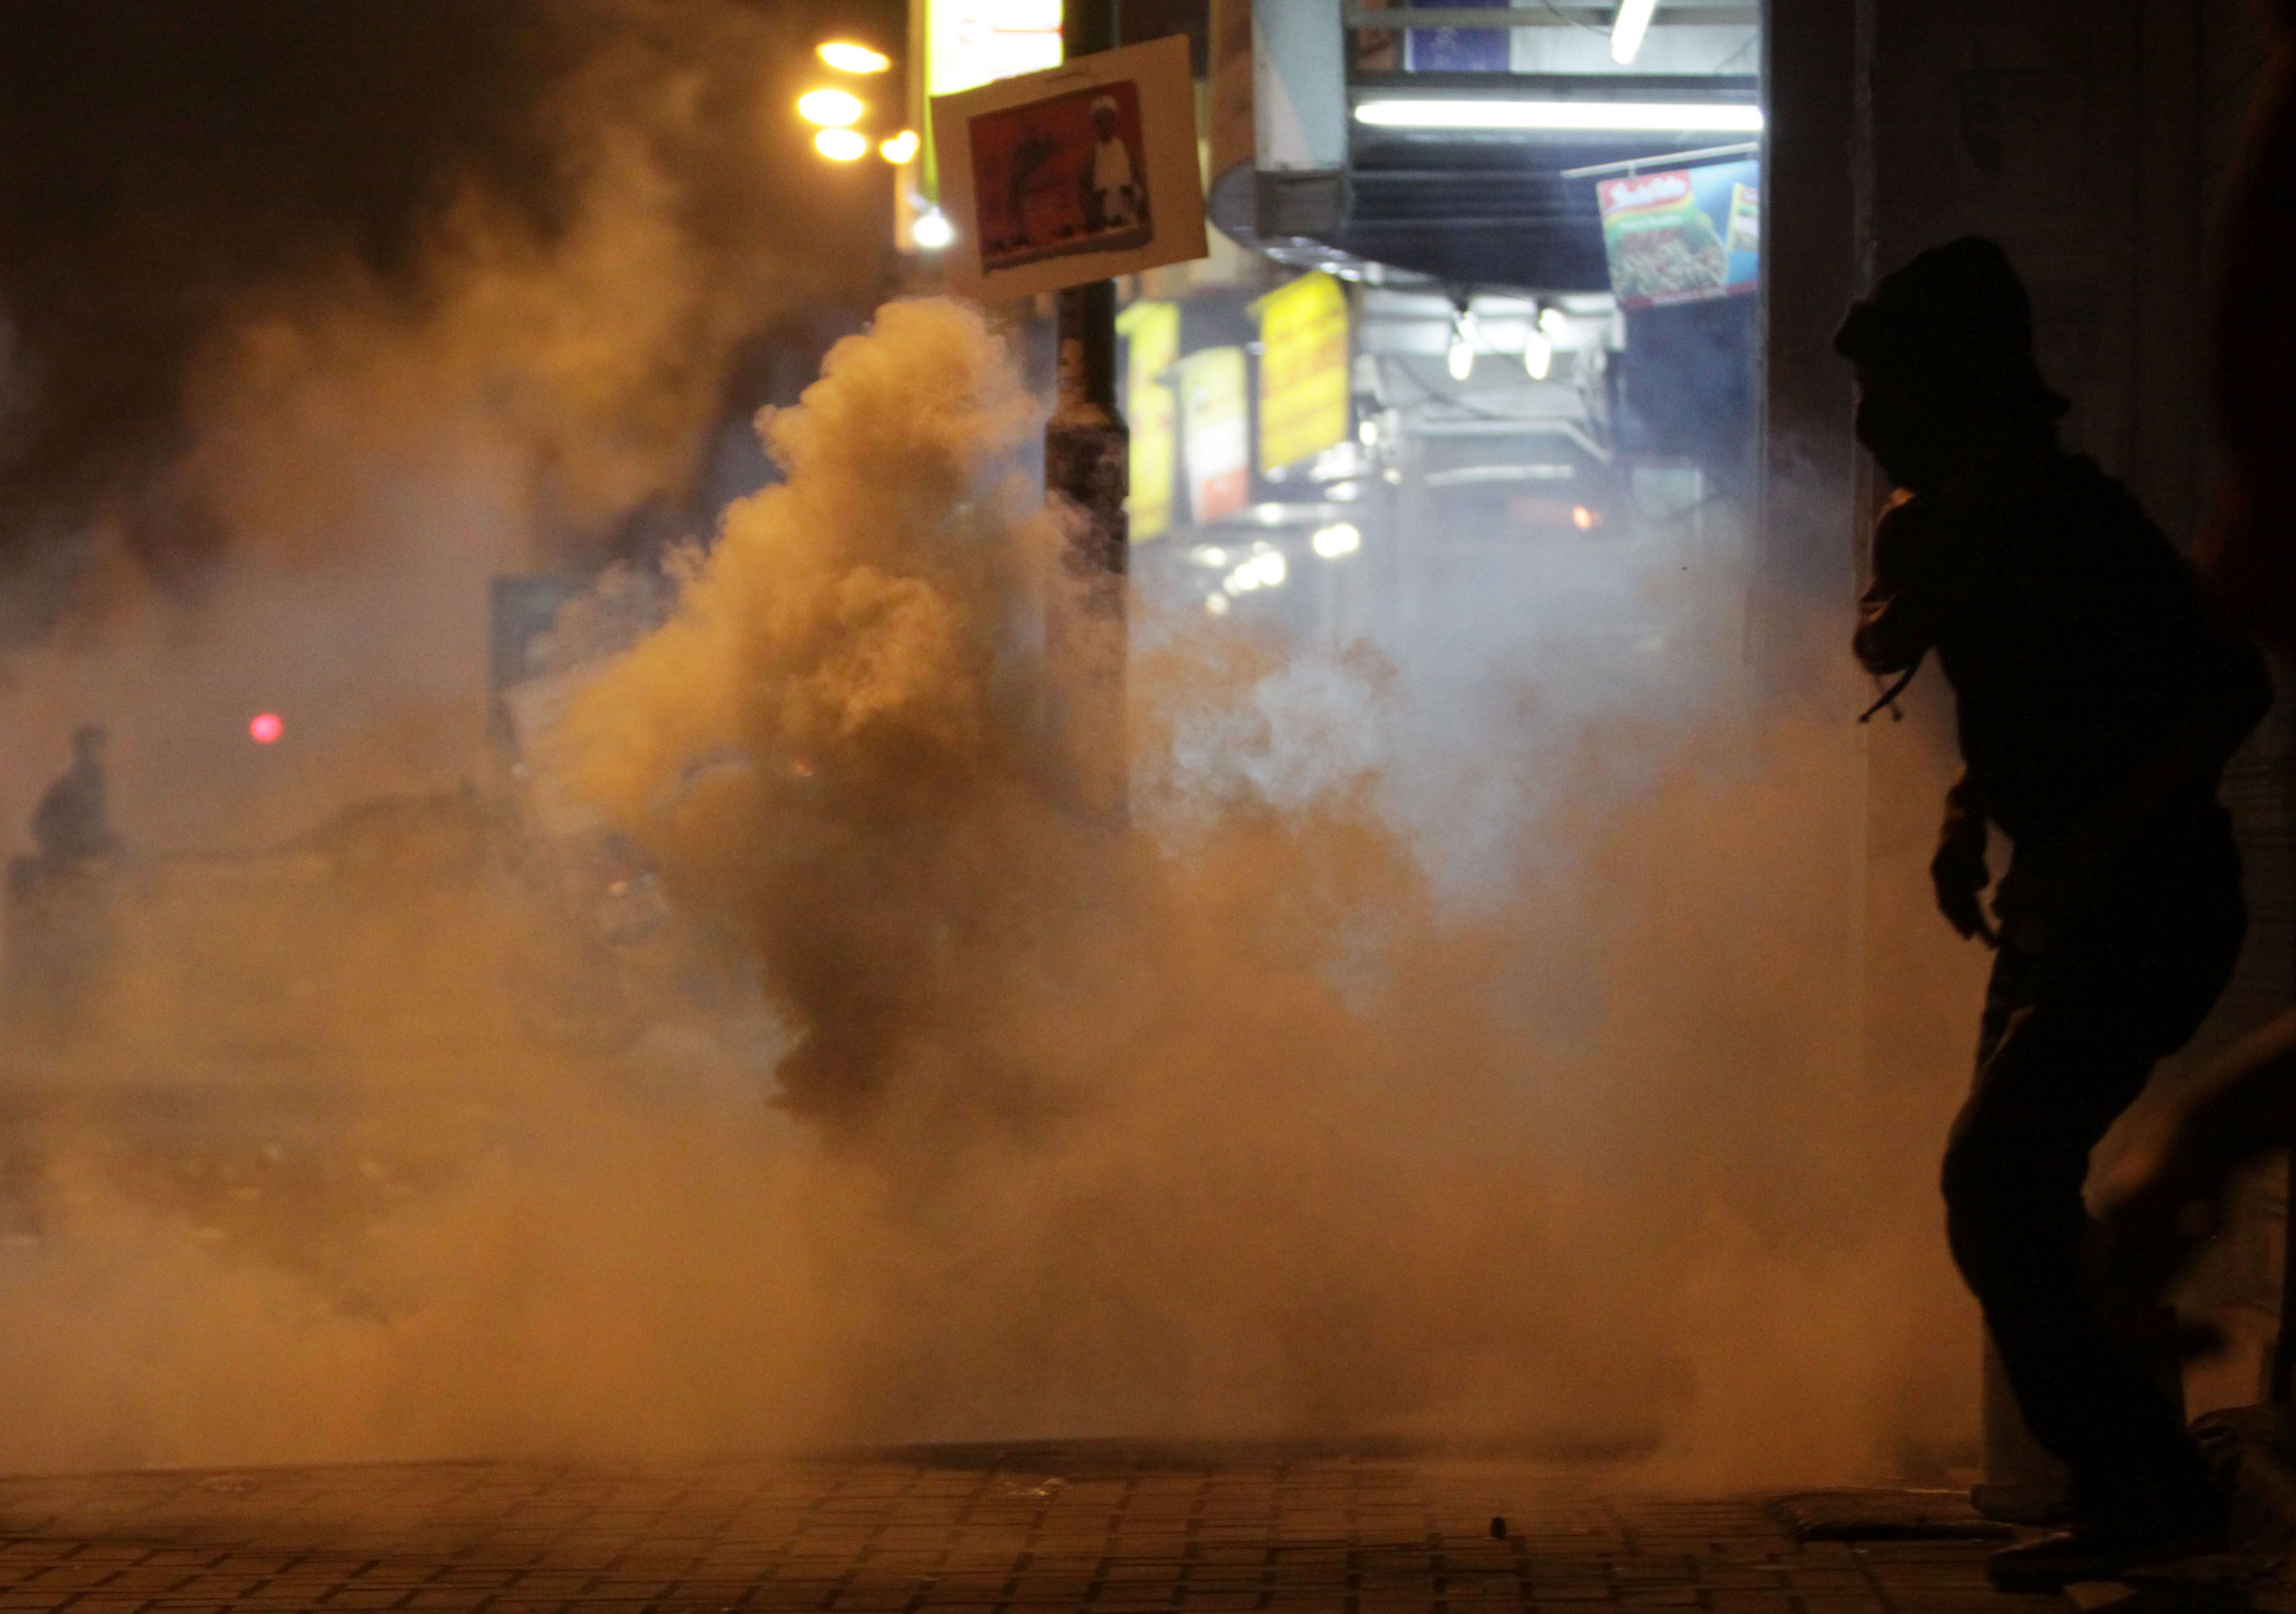 Tårgasen ligger tät i staden Daih i Bahrain. Nu ska den svenska polisen få använda tårgas även utomhus, något som inte varit tillåtet tidigare.